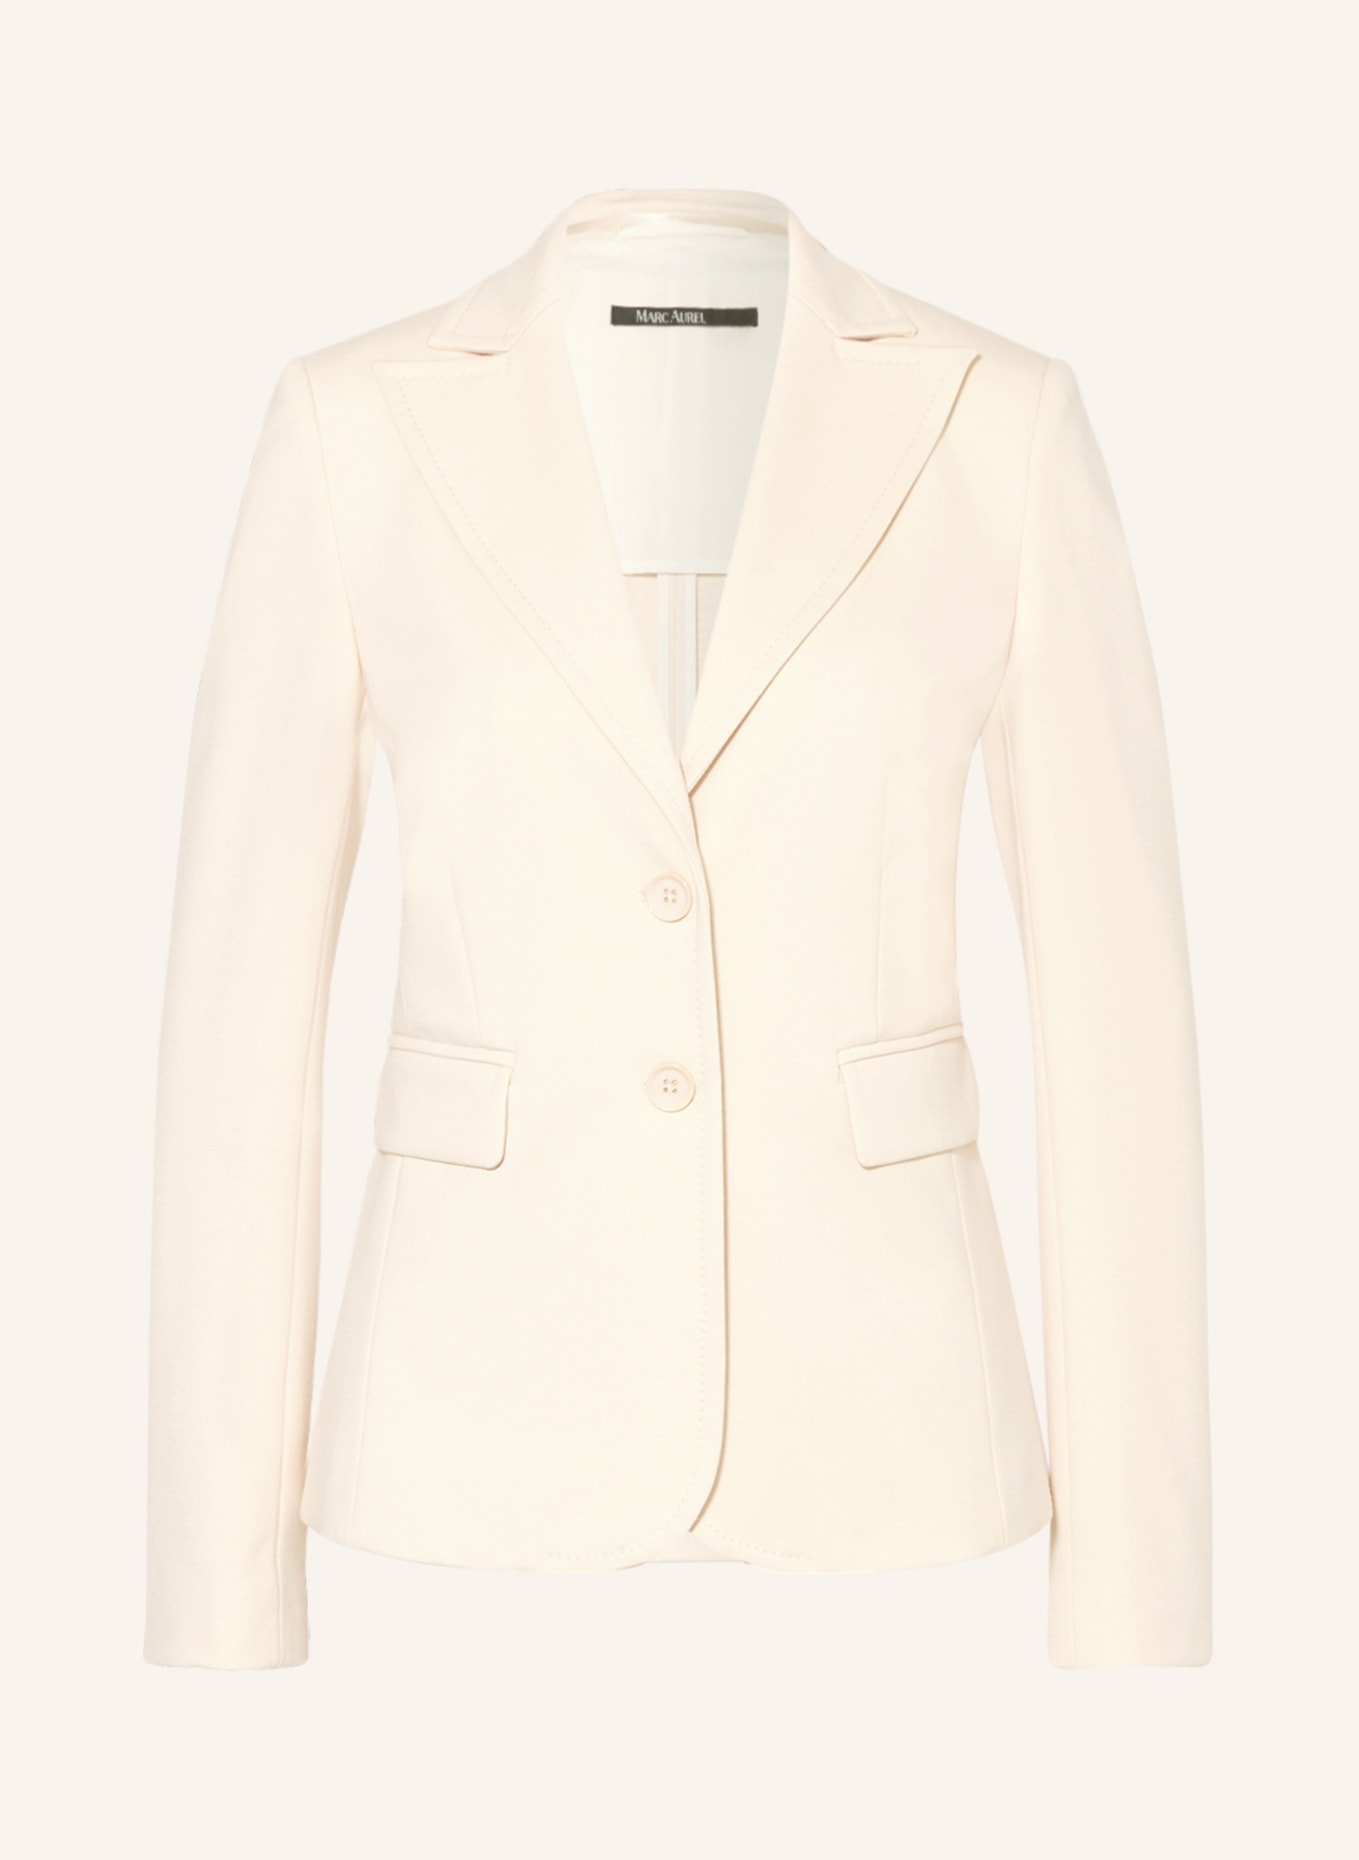 MARC AUREL Jersey blazer, Color: CREAM (Image 1)